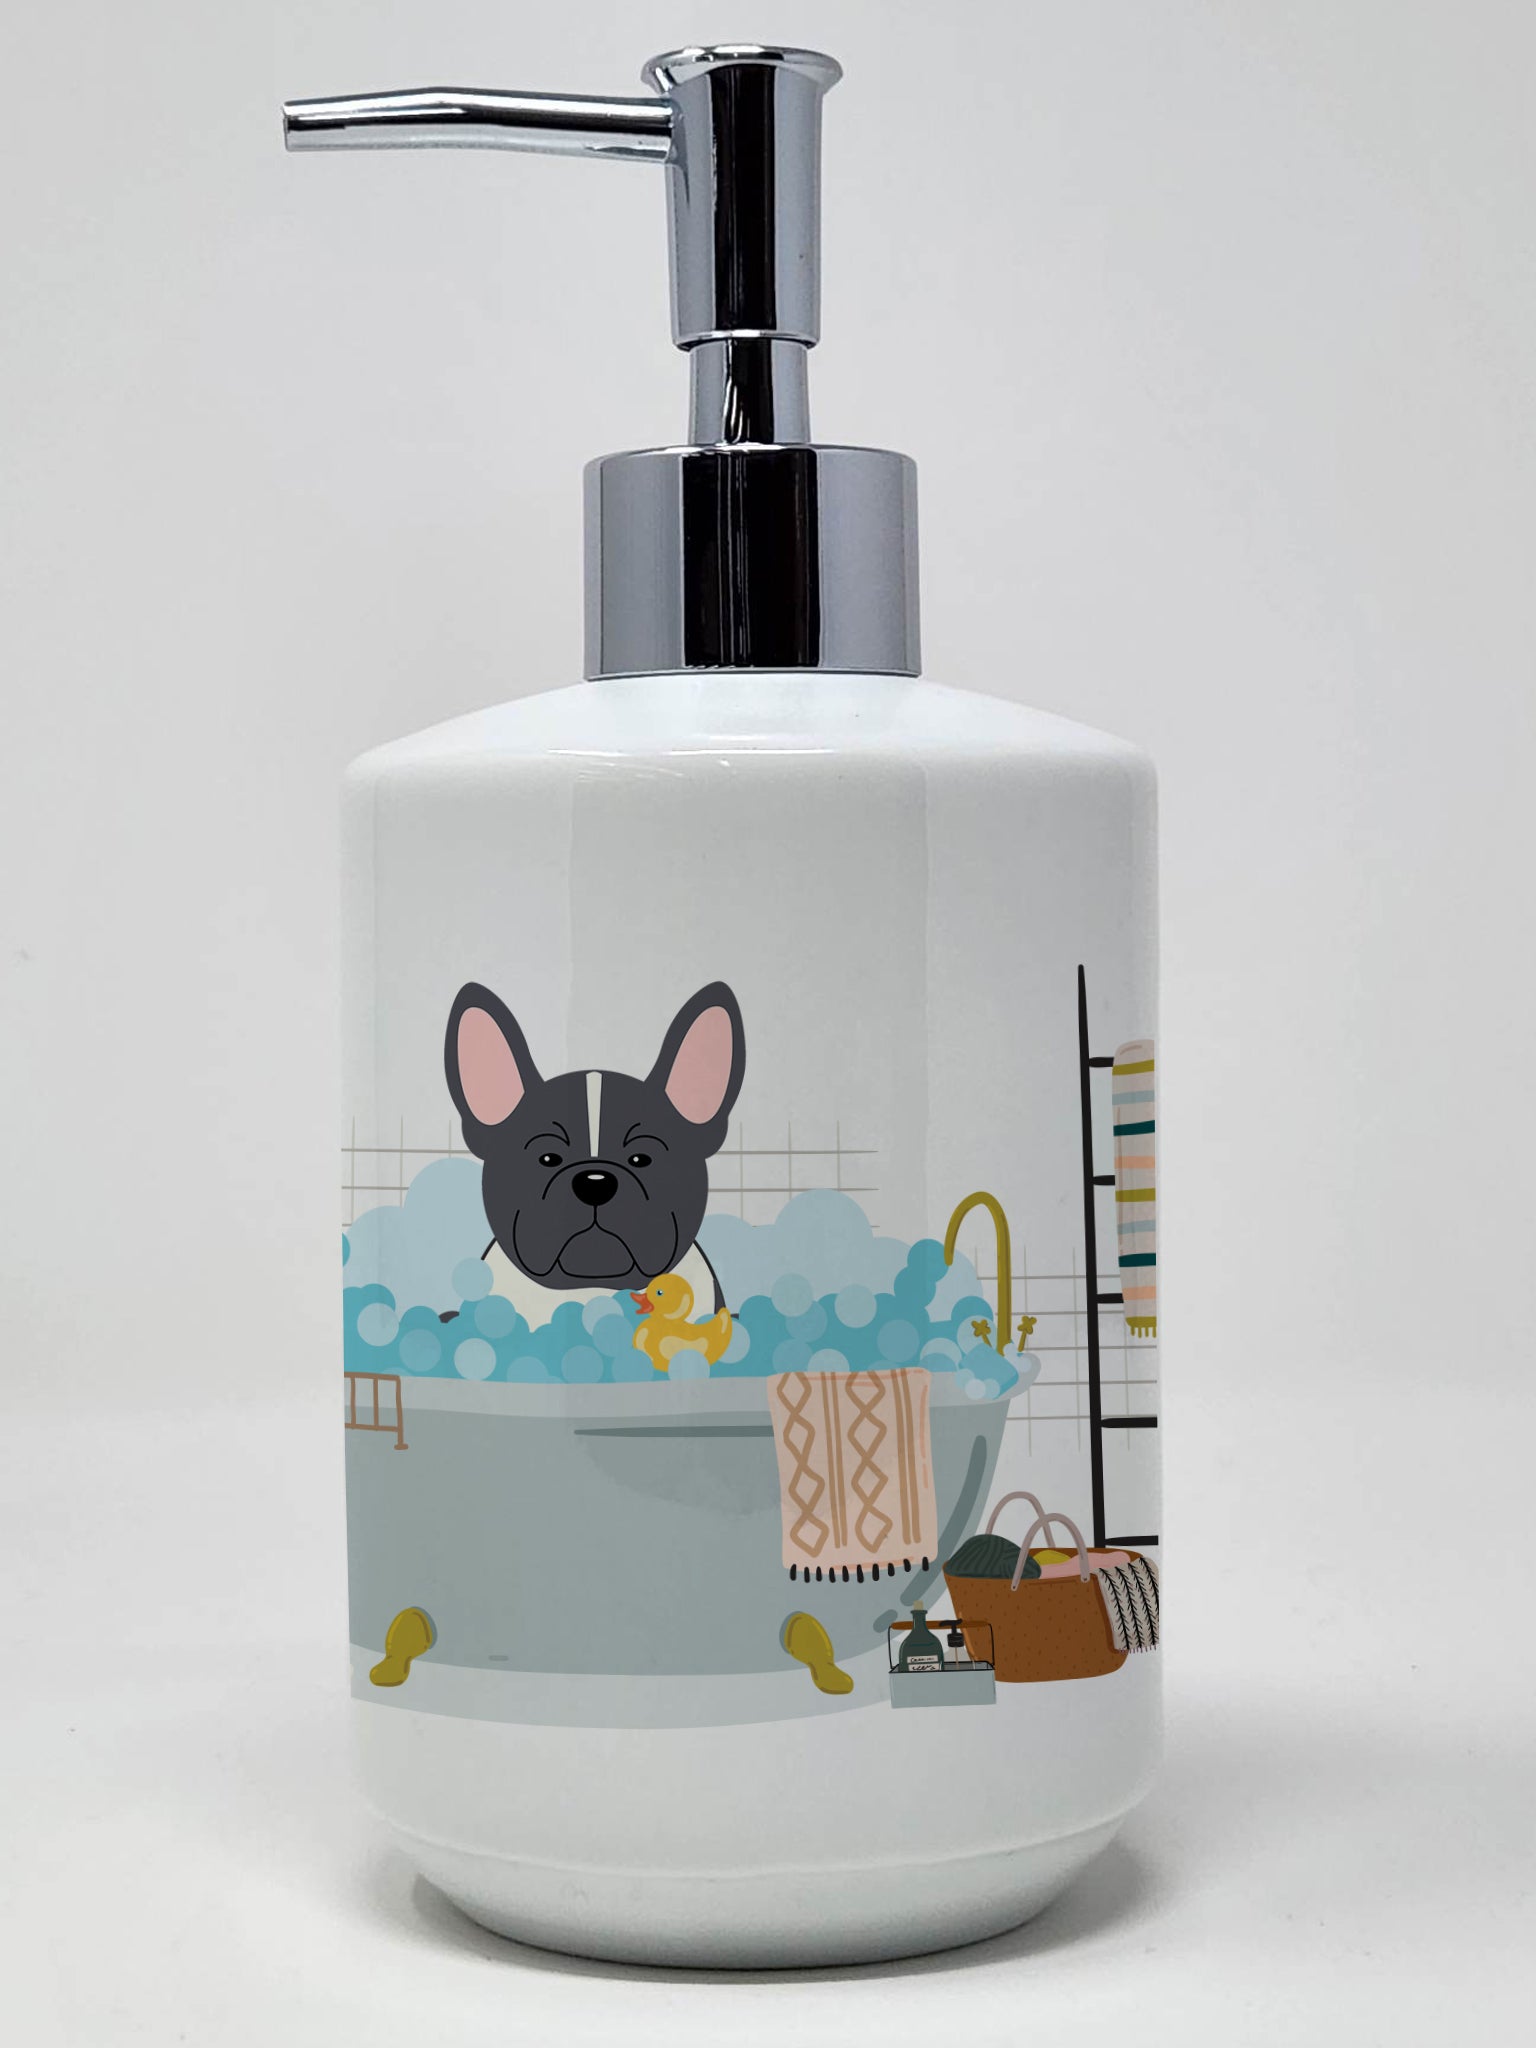 Buy this Black White French Bulldog in Bathtub Ceramic Soap Dispenser